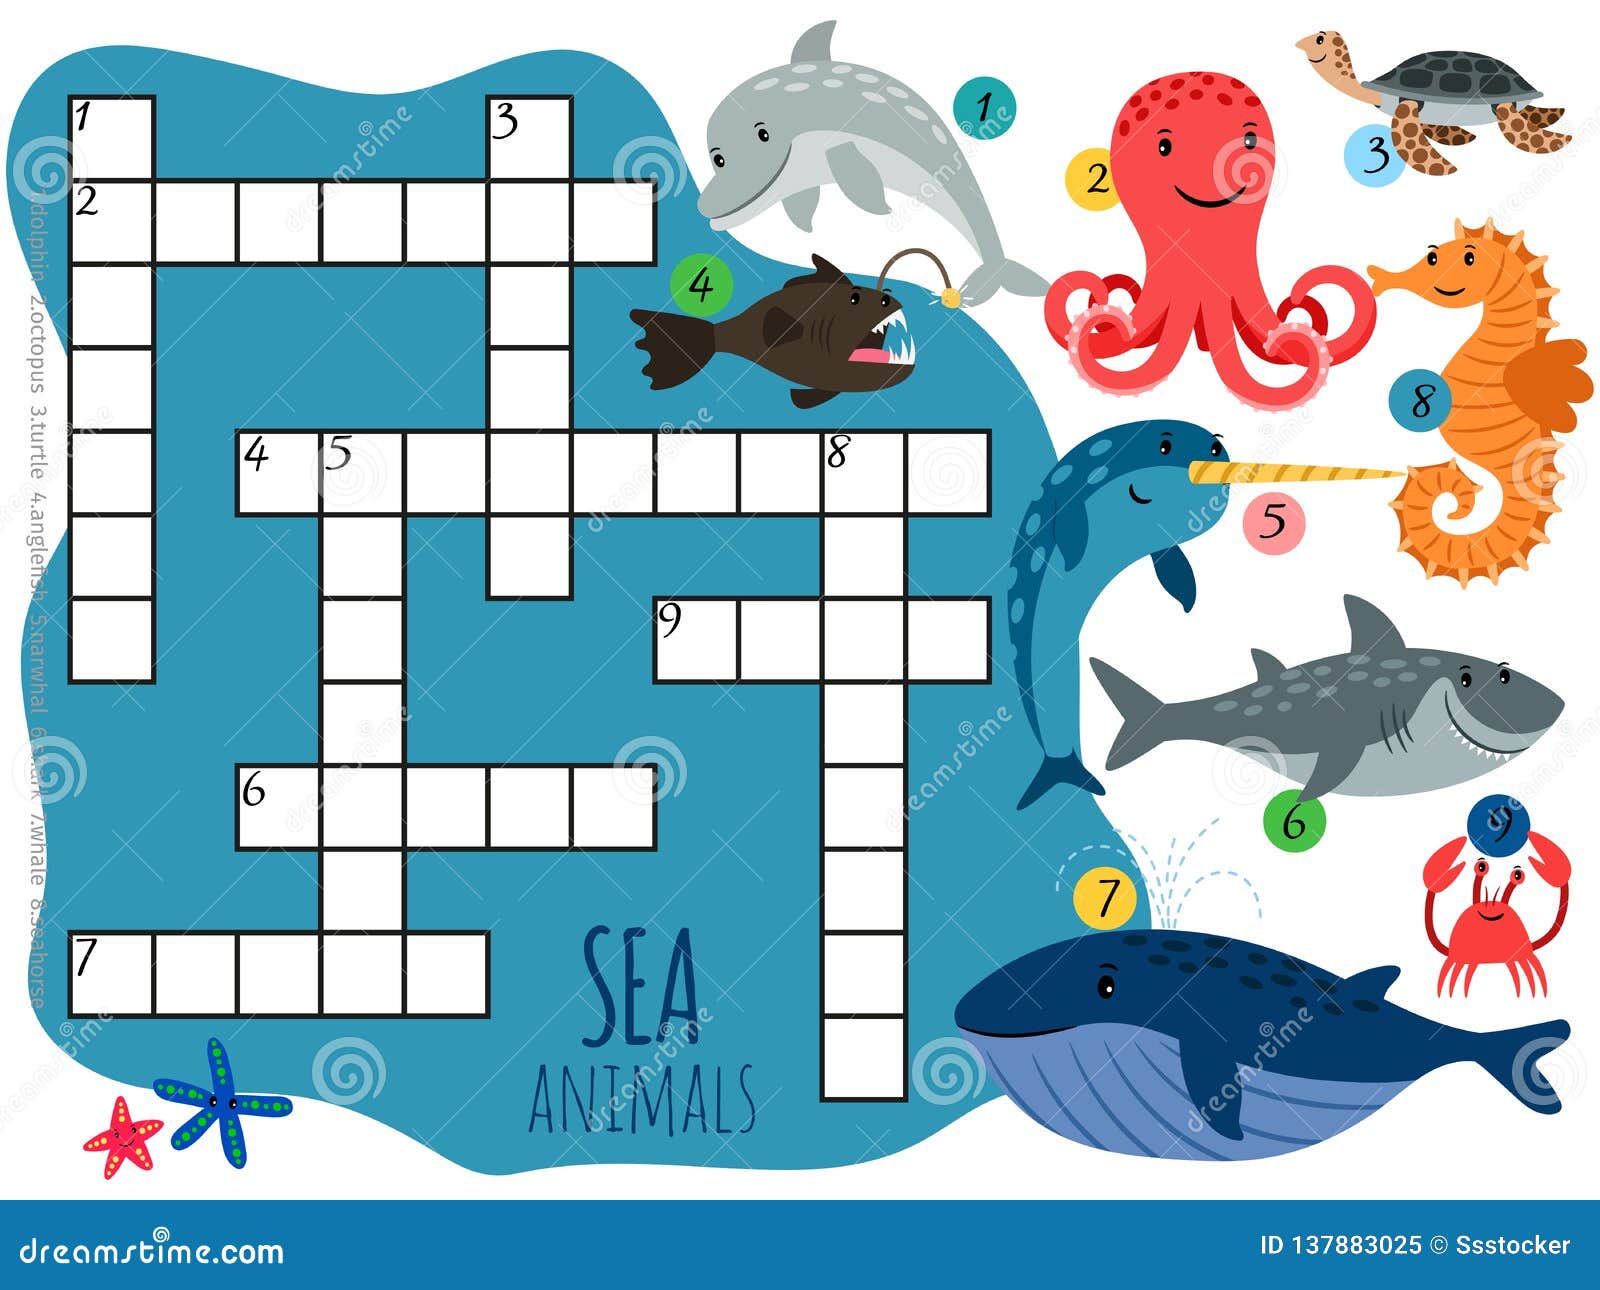 Crossword more. Кроссворд для детей на тему море. Кроссворд морские обитатели для детей. Кроссворды про морских животных для детей. Кроссворд на морскую тему детский.